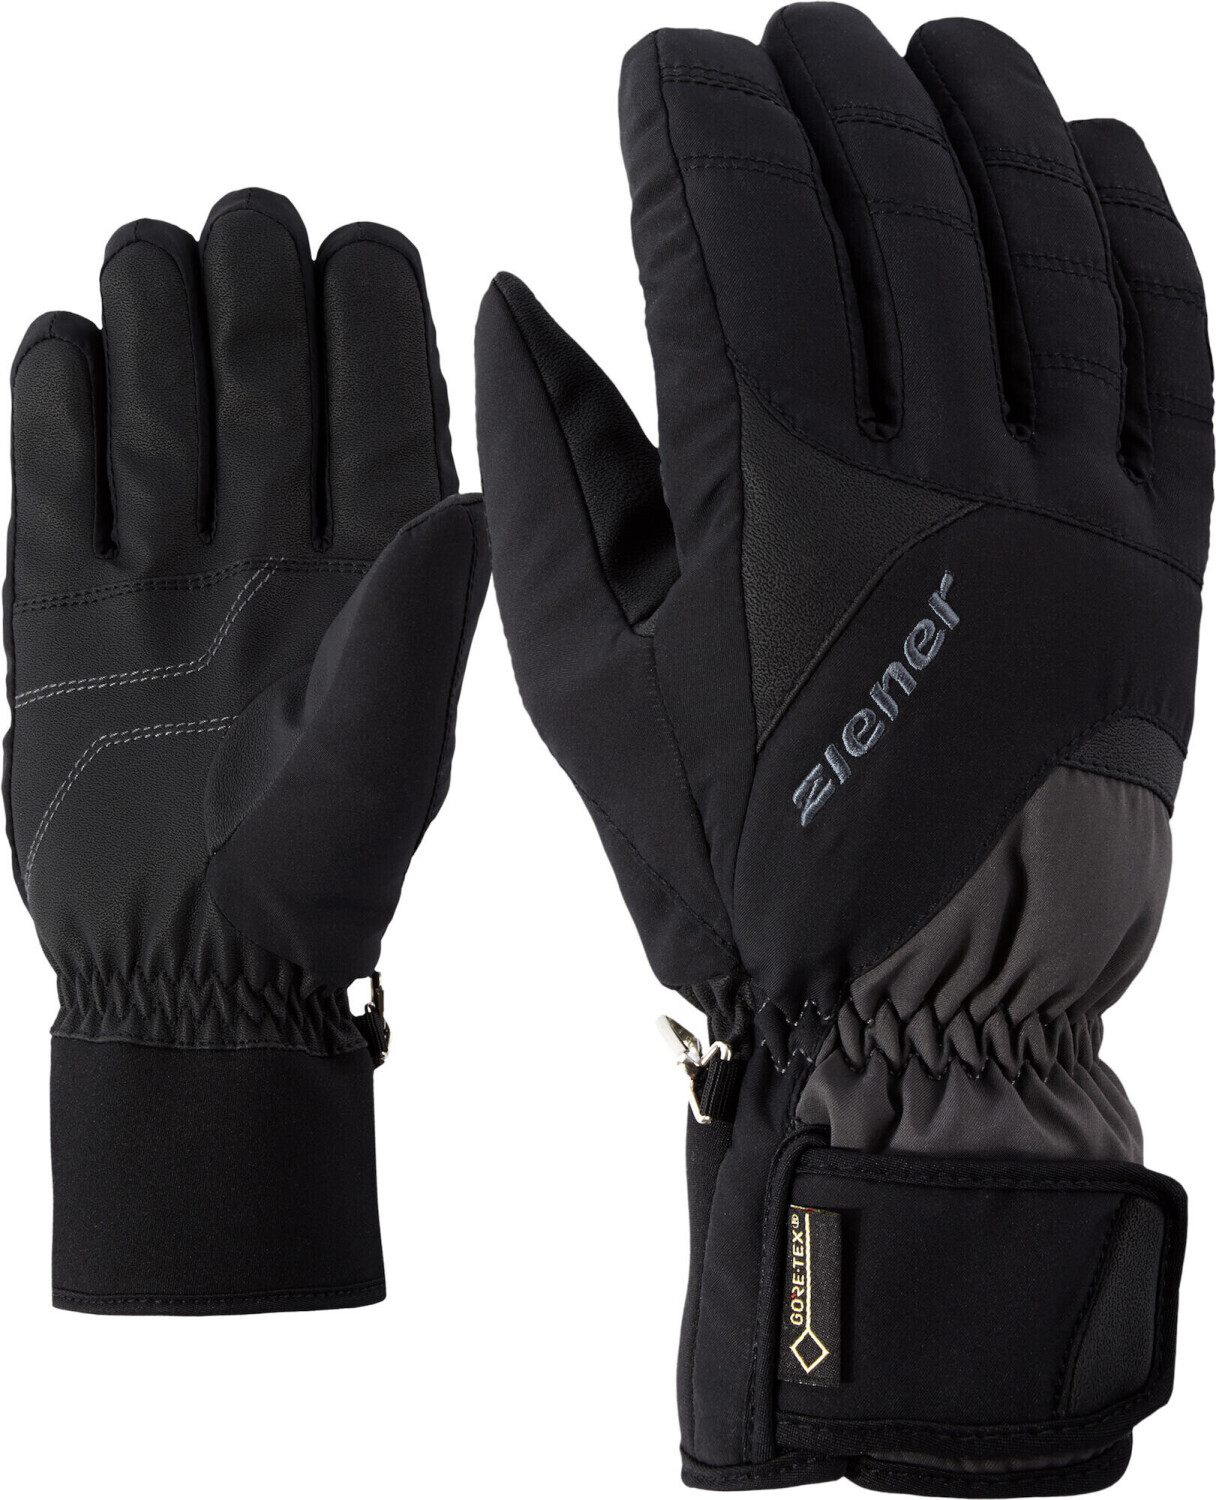 GTX Alpine Preisvergleich 42,94 graphite.black bei Glove Guffert Ziener Ski ab € |